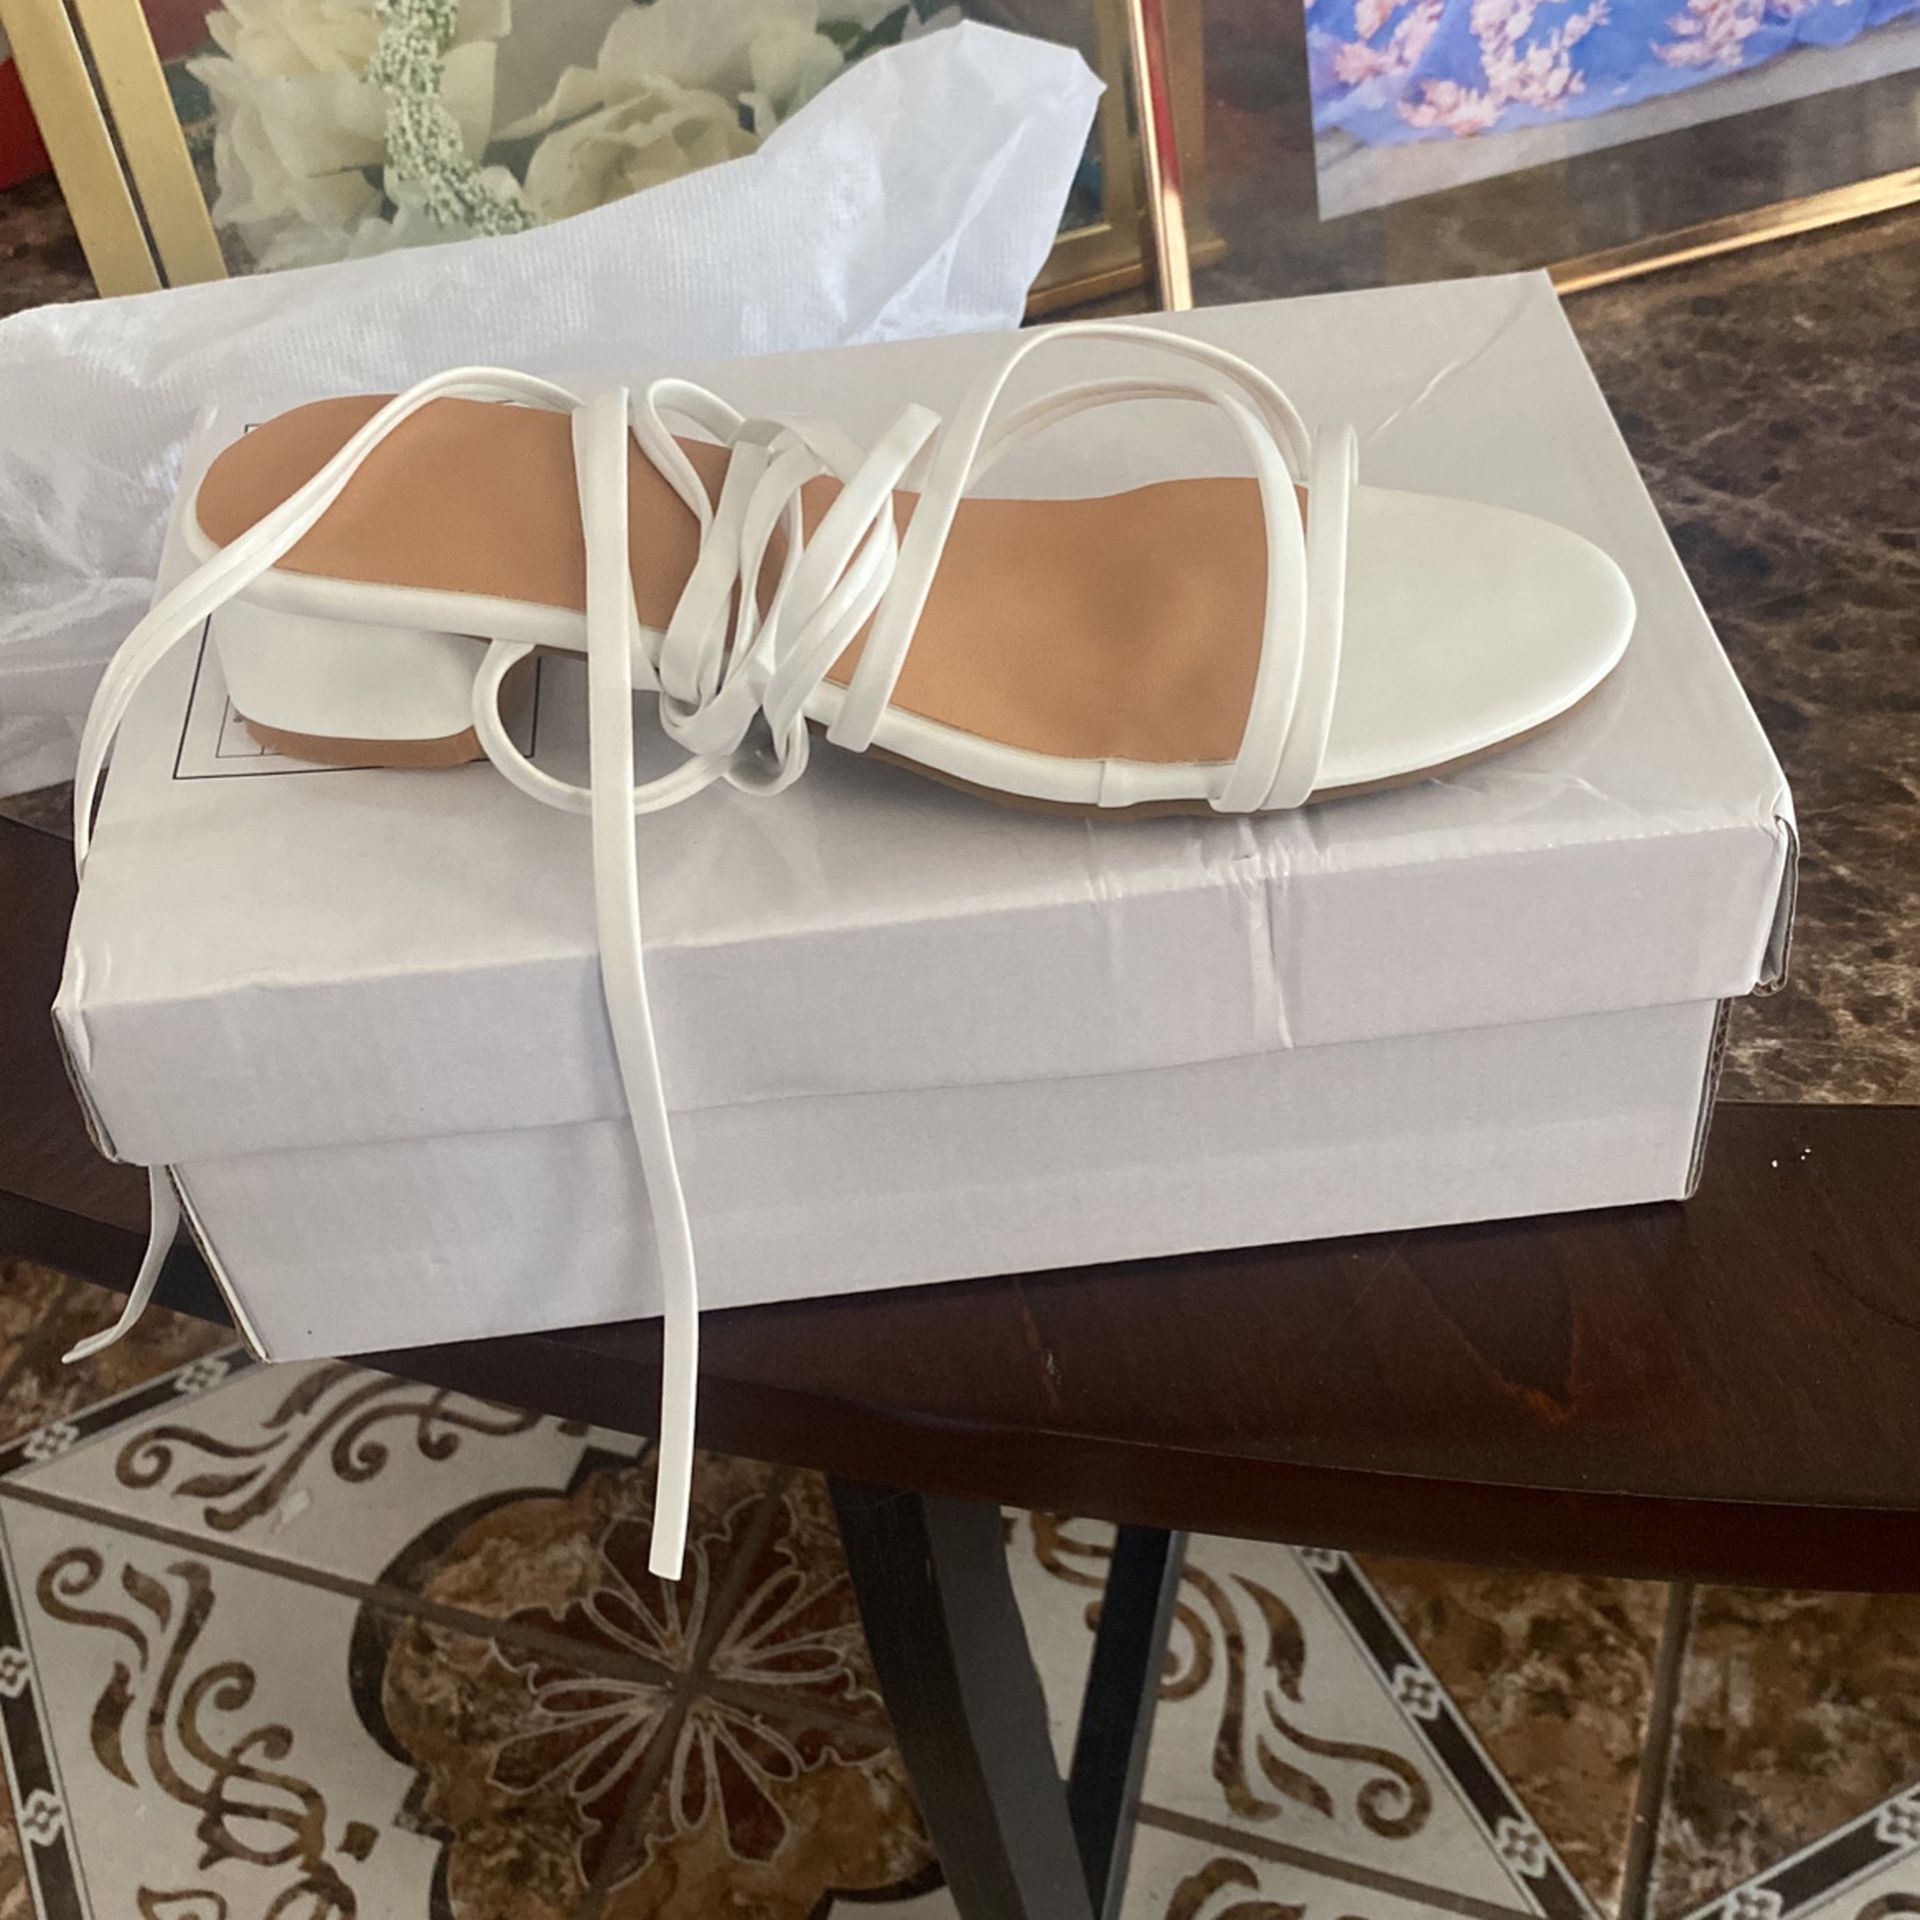 White Sandals For Girls 